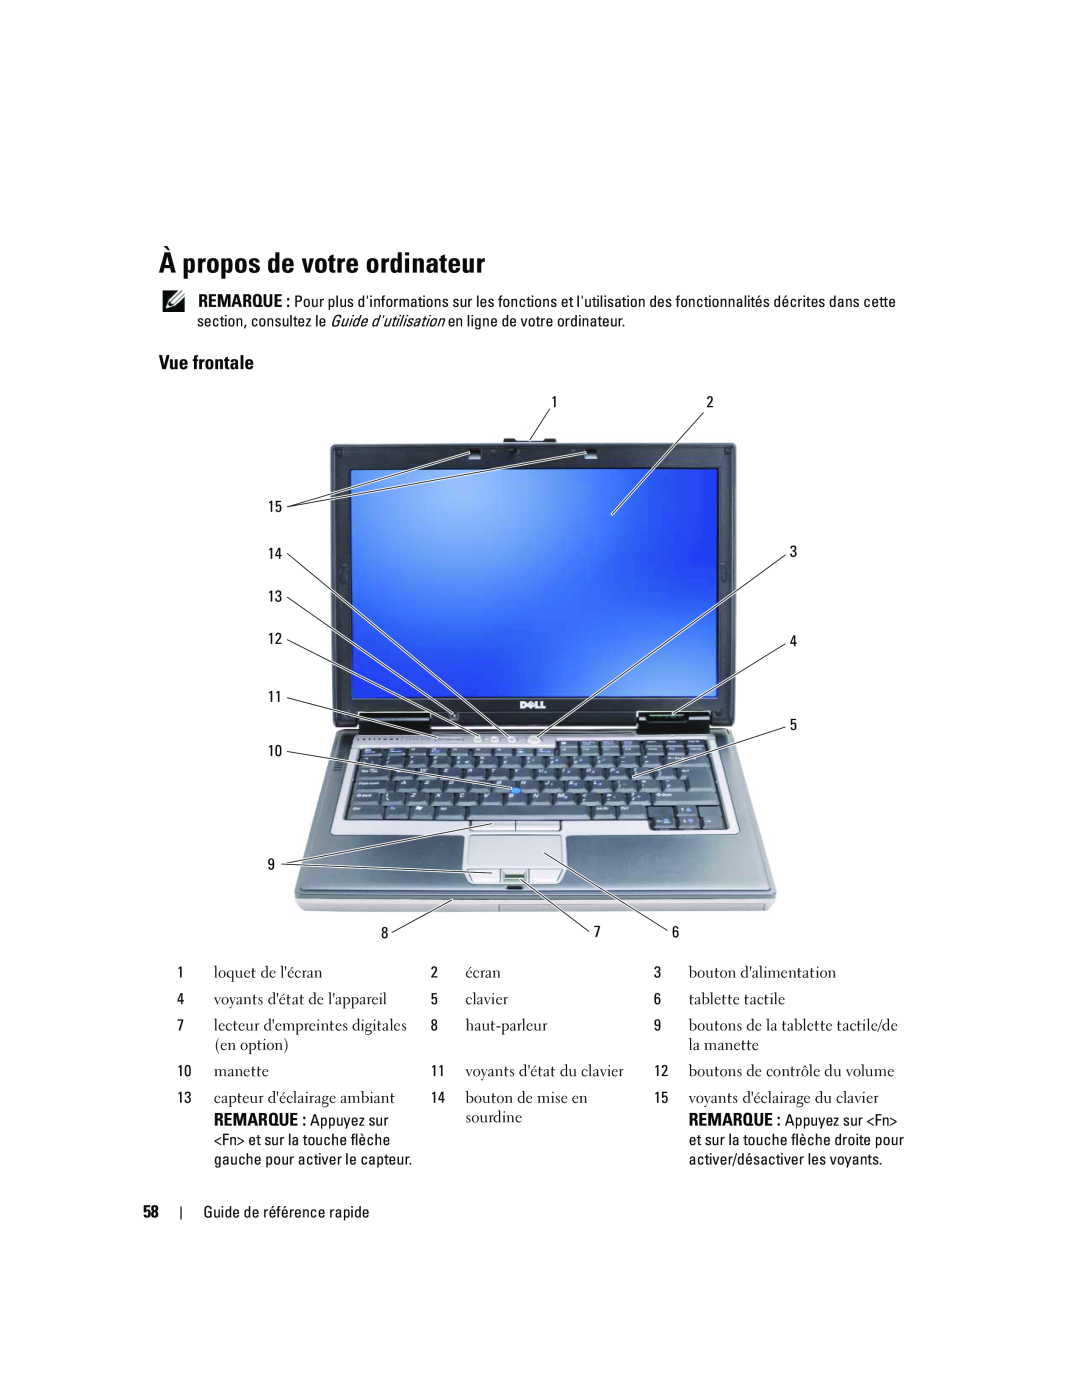 Dell ATG D620 manual À propos de votre ordinateur, Vue frontale, REMARQUE Appuyez sur 